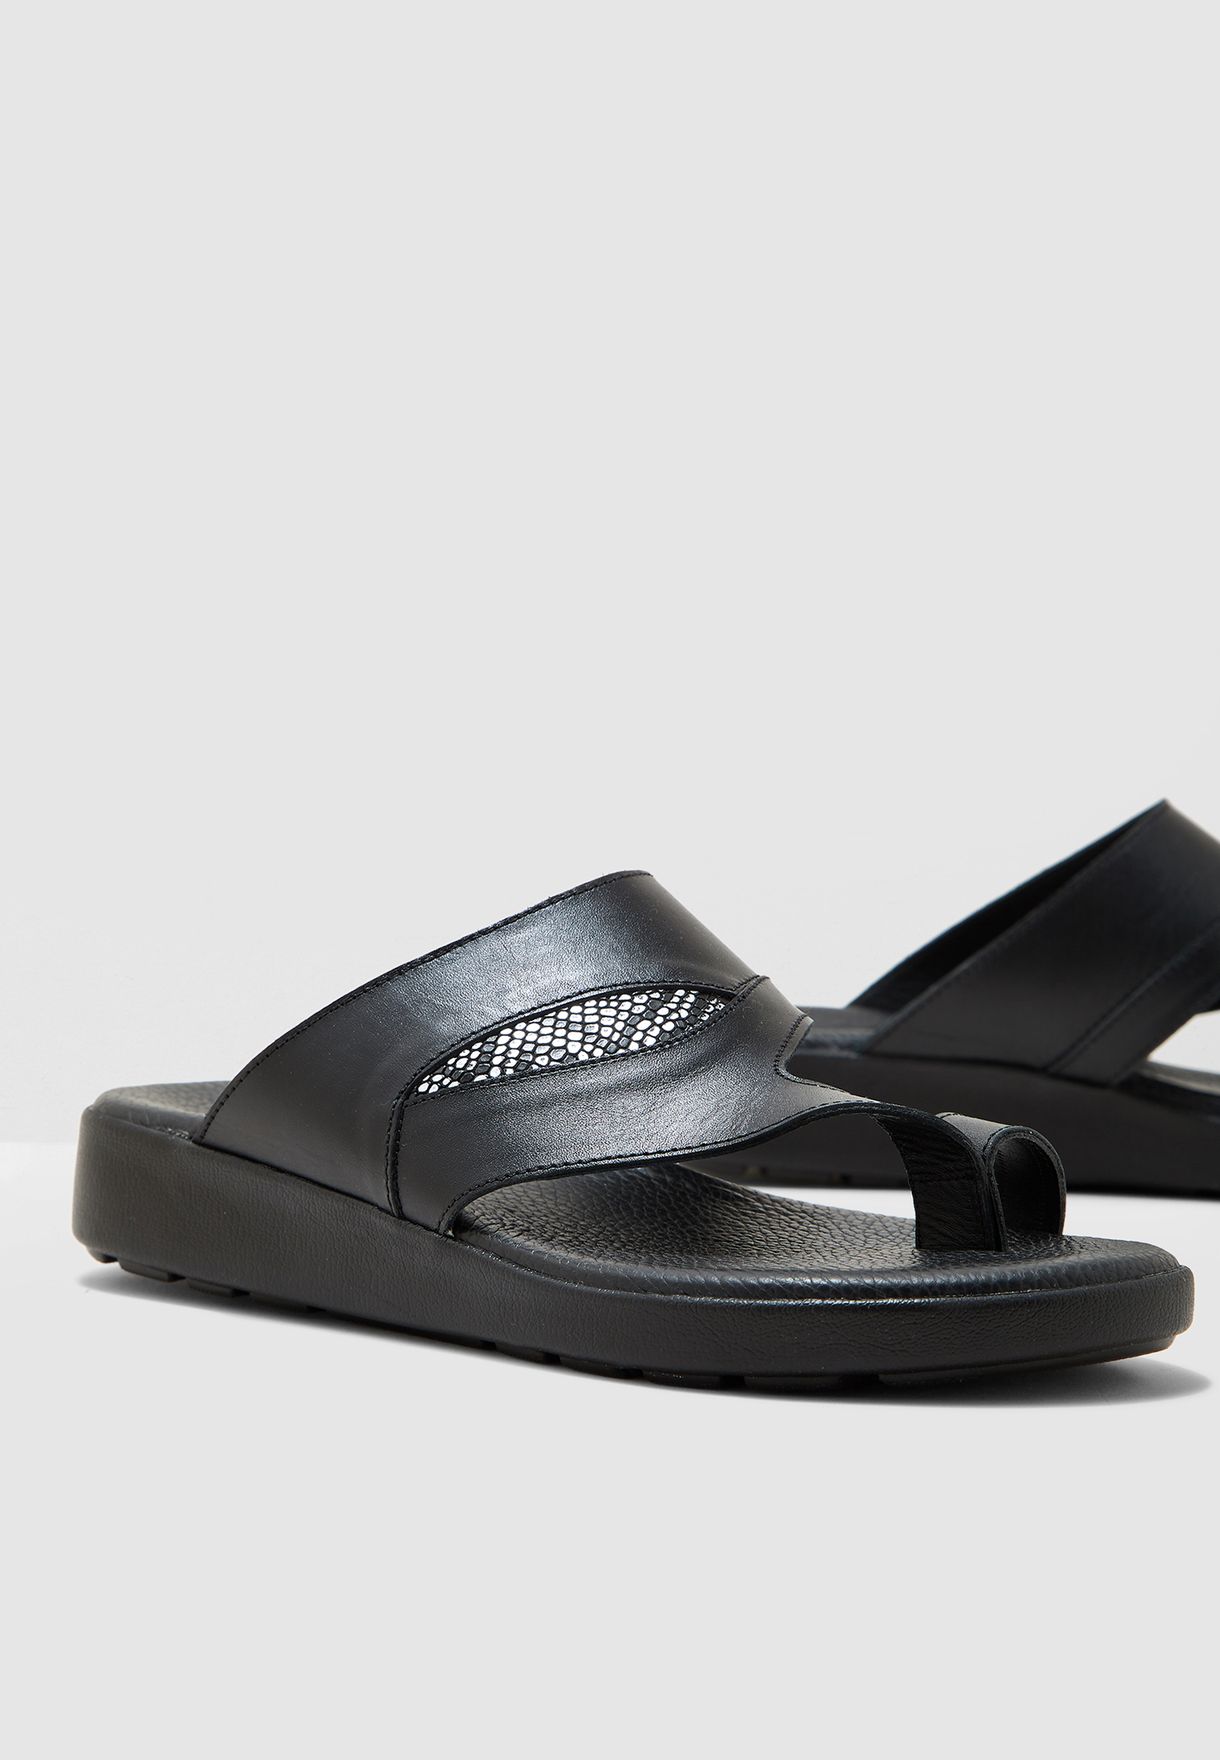 black toe loop sandals